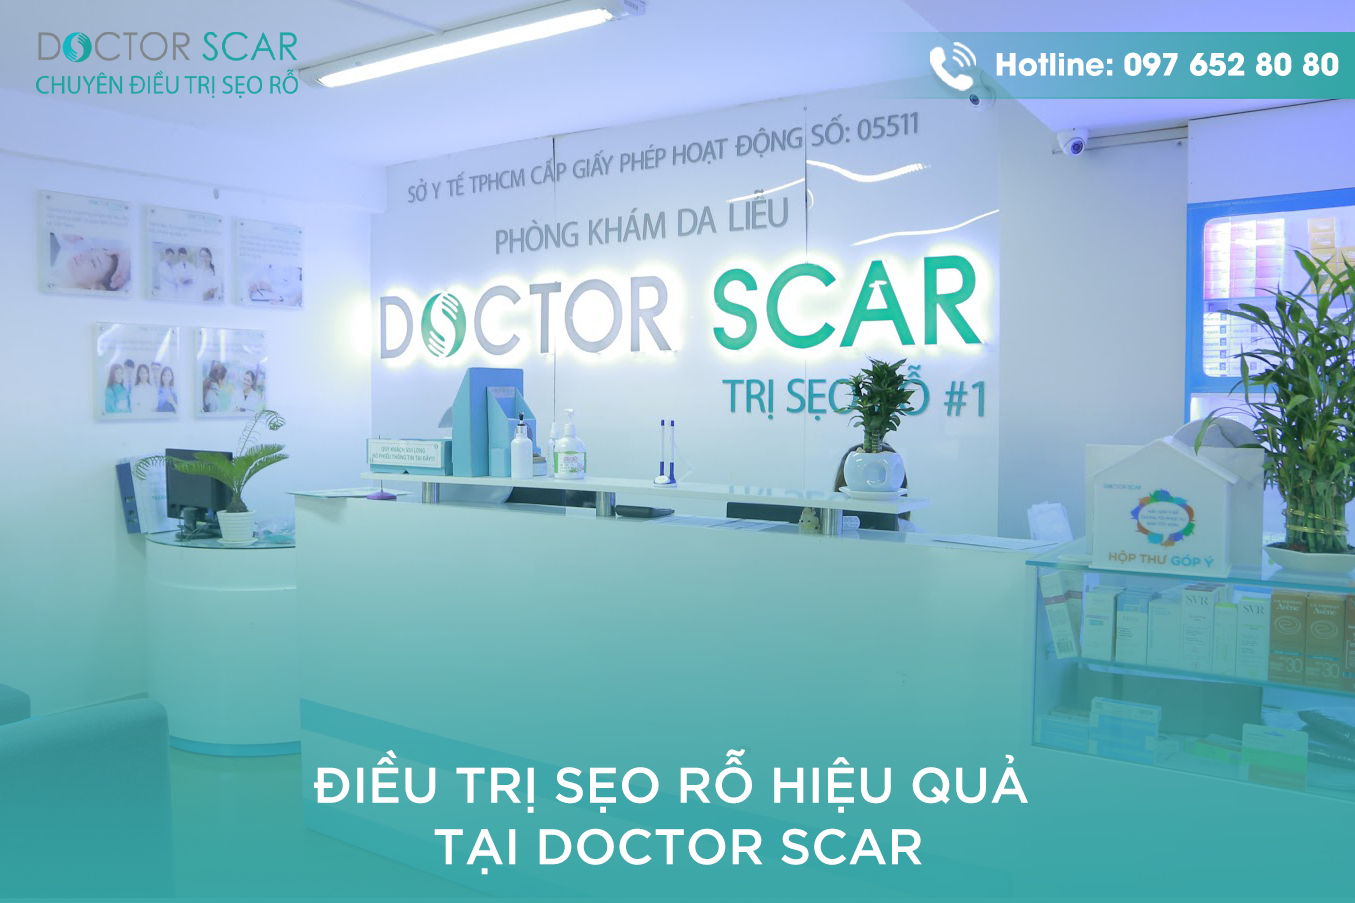 Doctor-Scar-la-phong-kham-da-lieu-chuyen-dieu-tri-seo-ro.